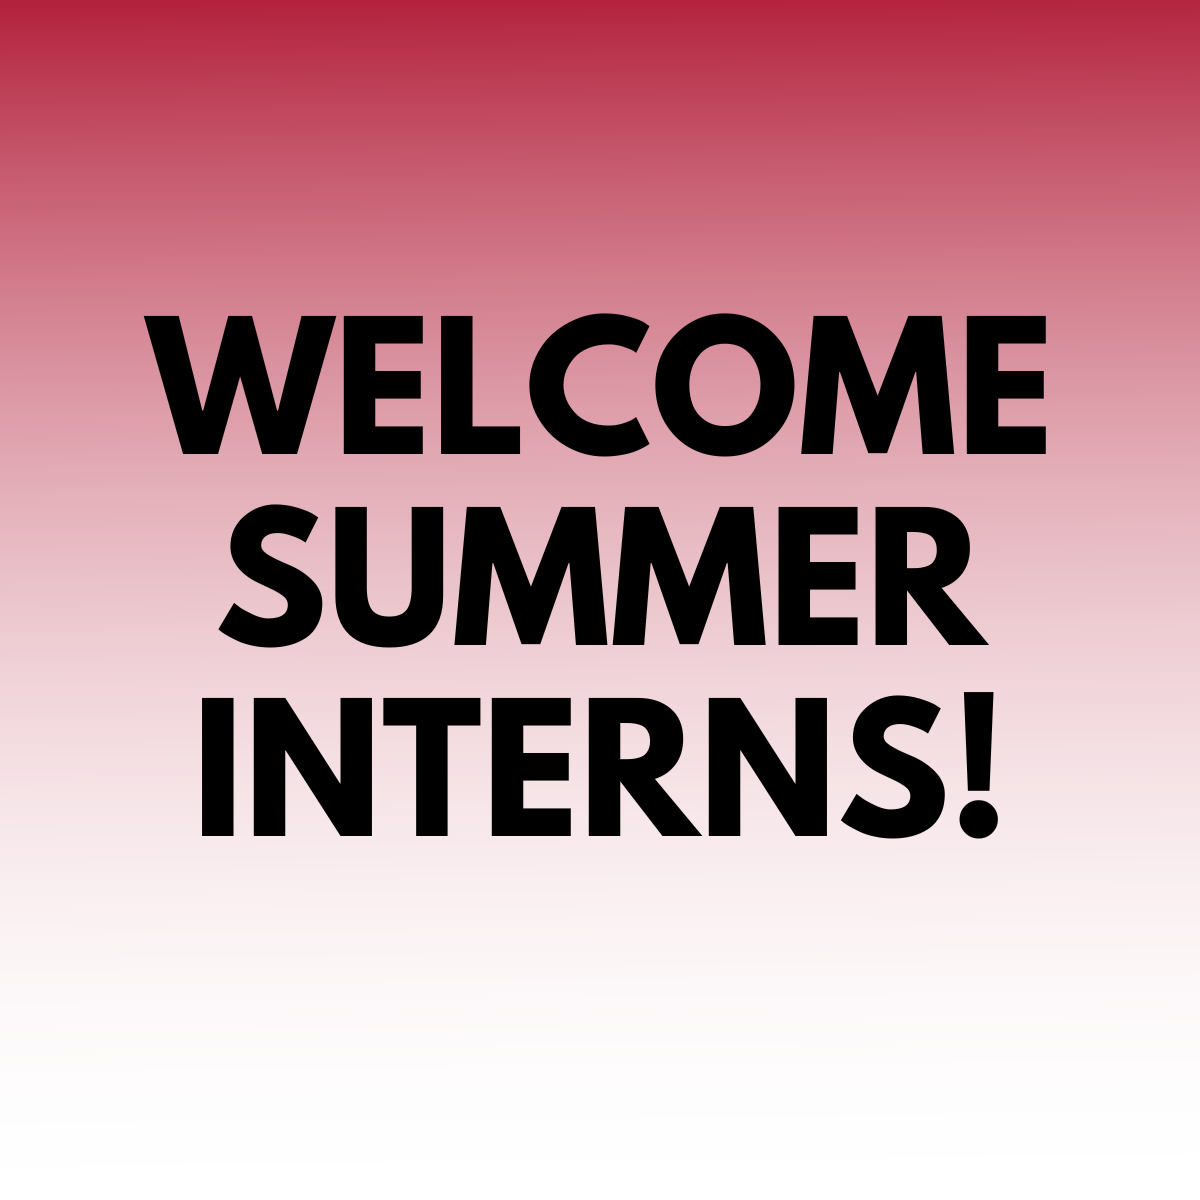 Welcome summer interns